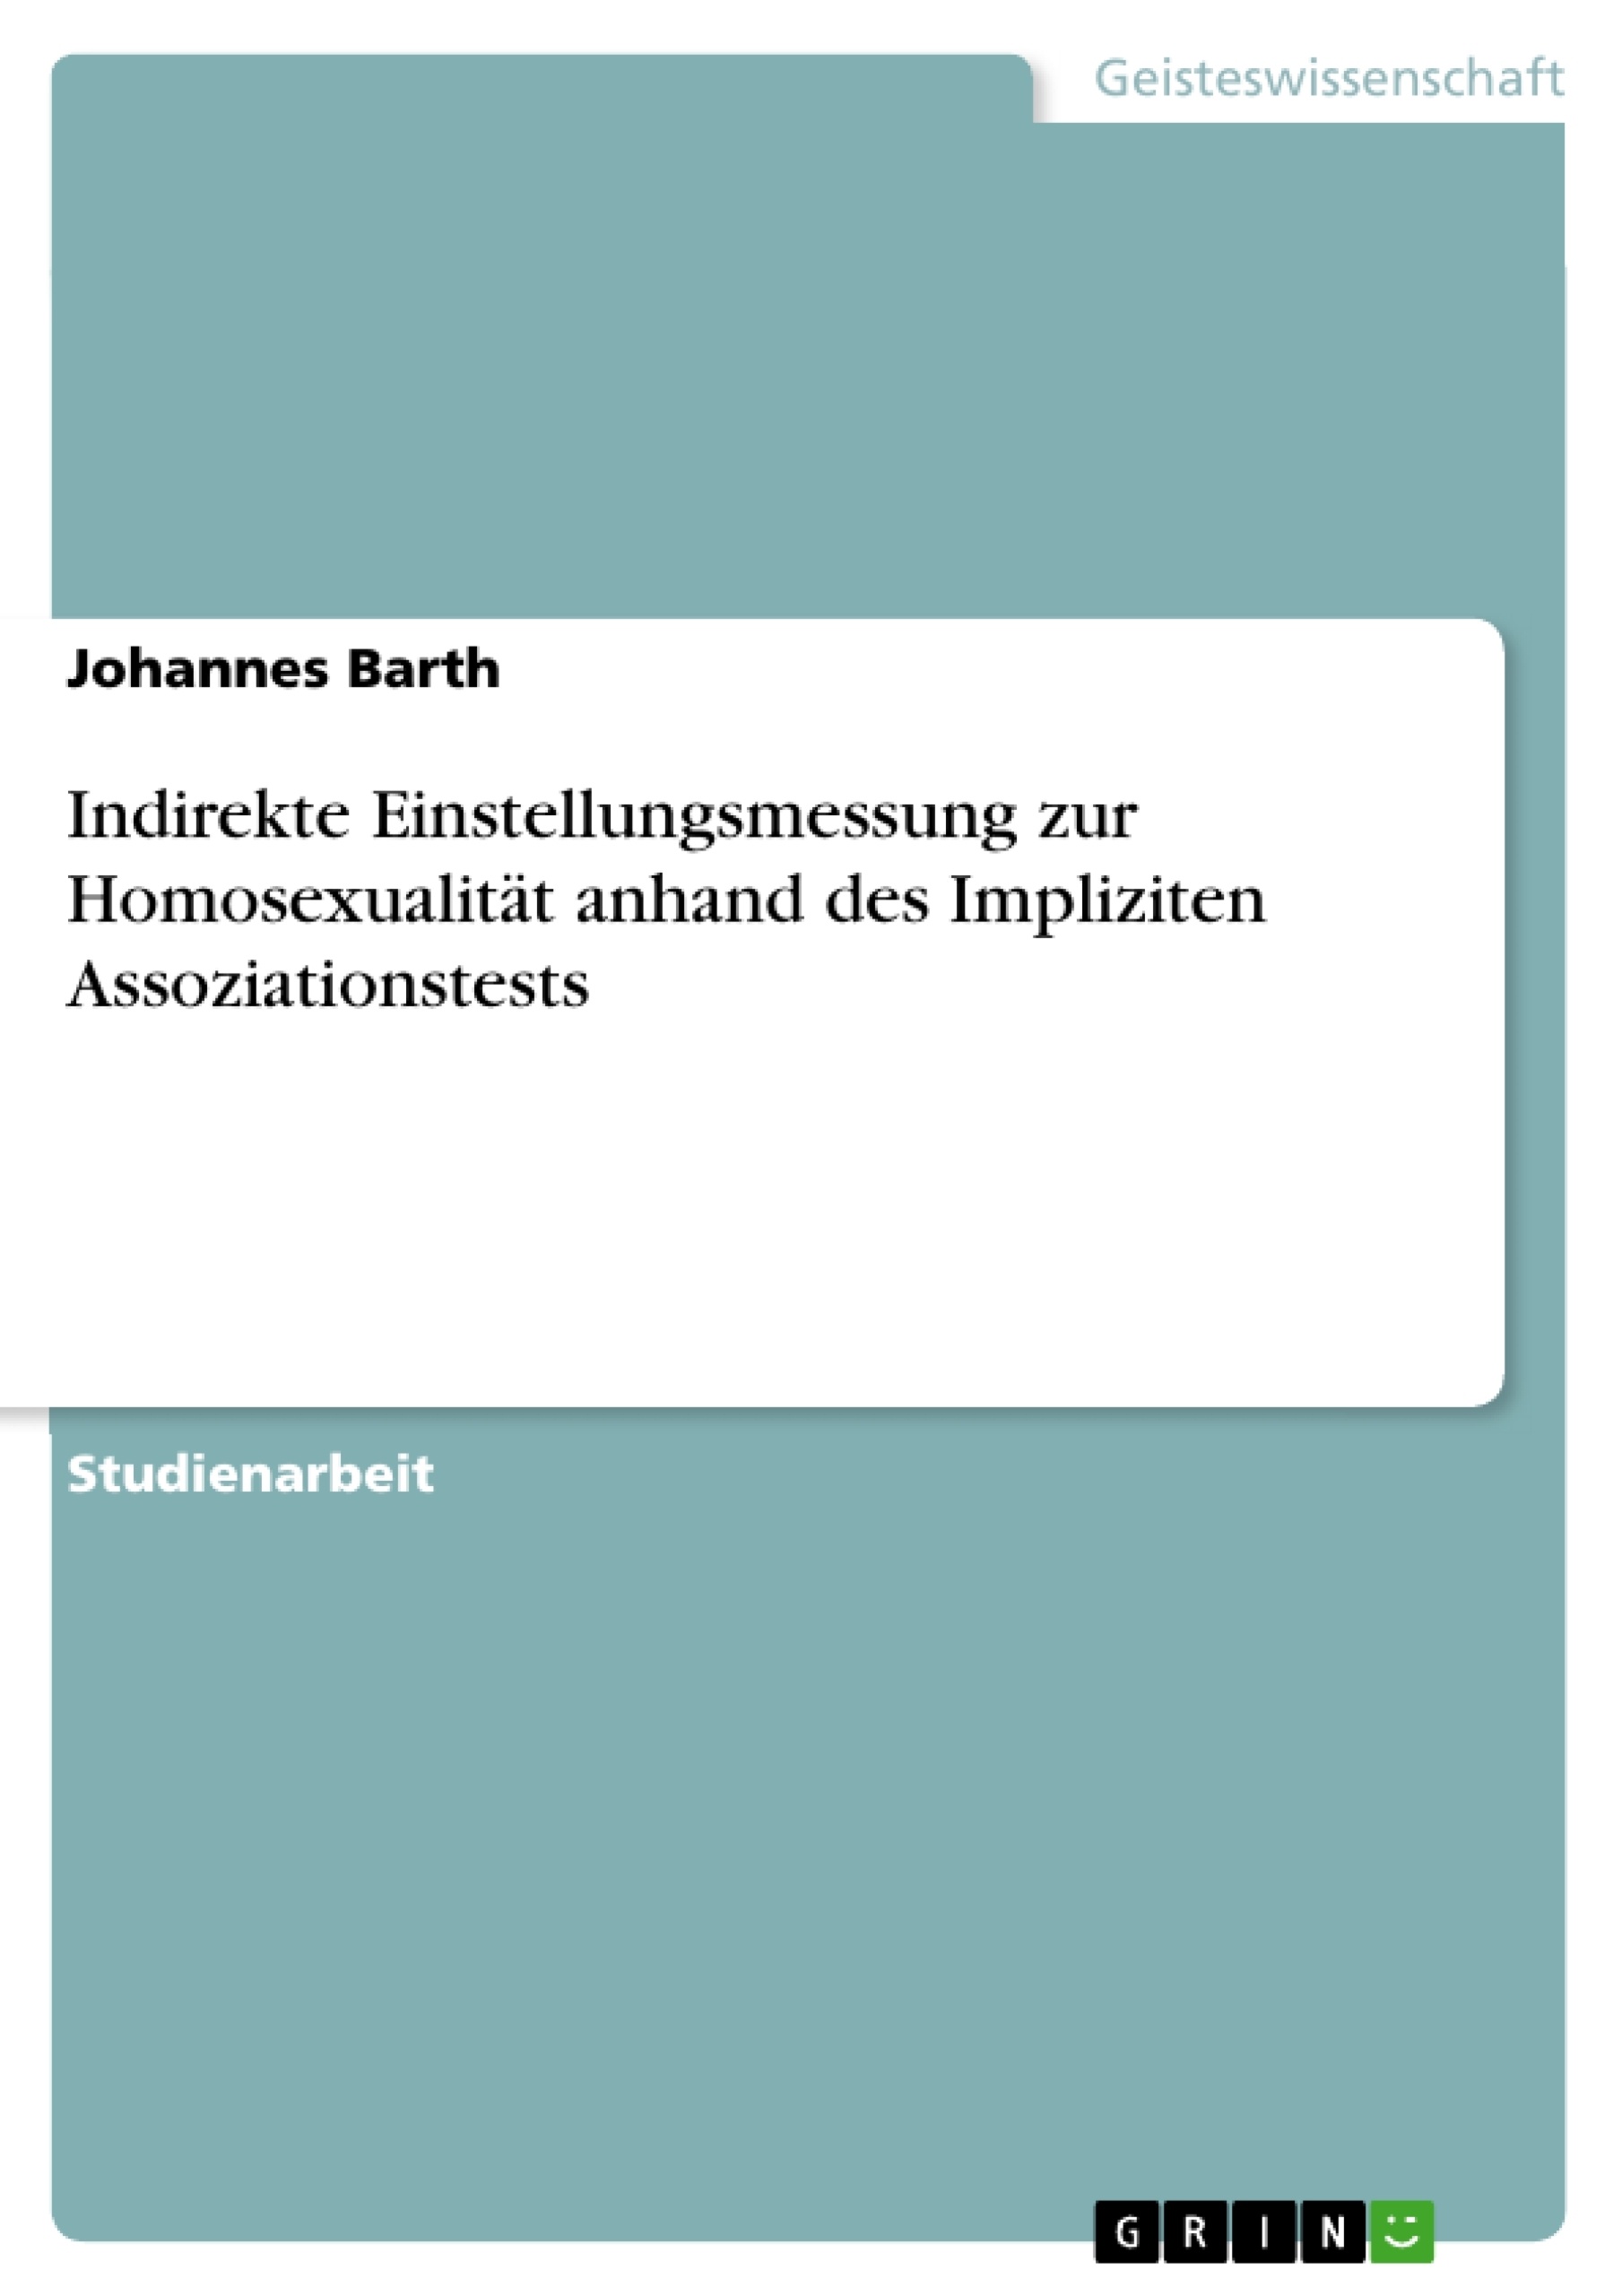 Título: Indirekte Einstellungsmessung zur Homosexualität anhand des Impliziten Assoziationstests